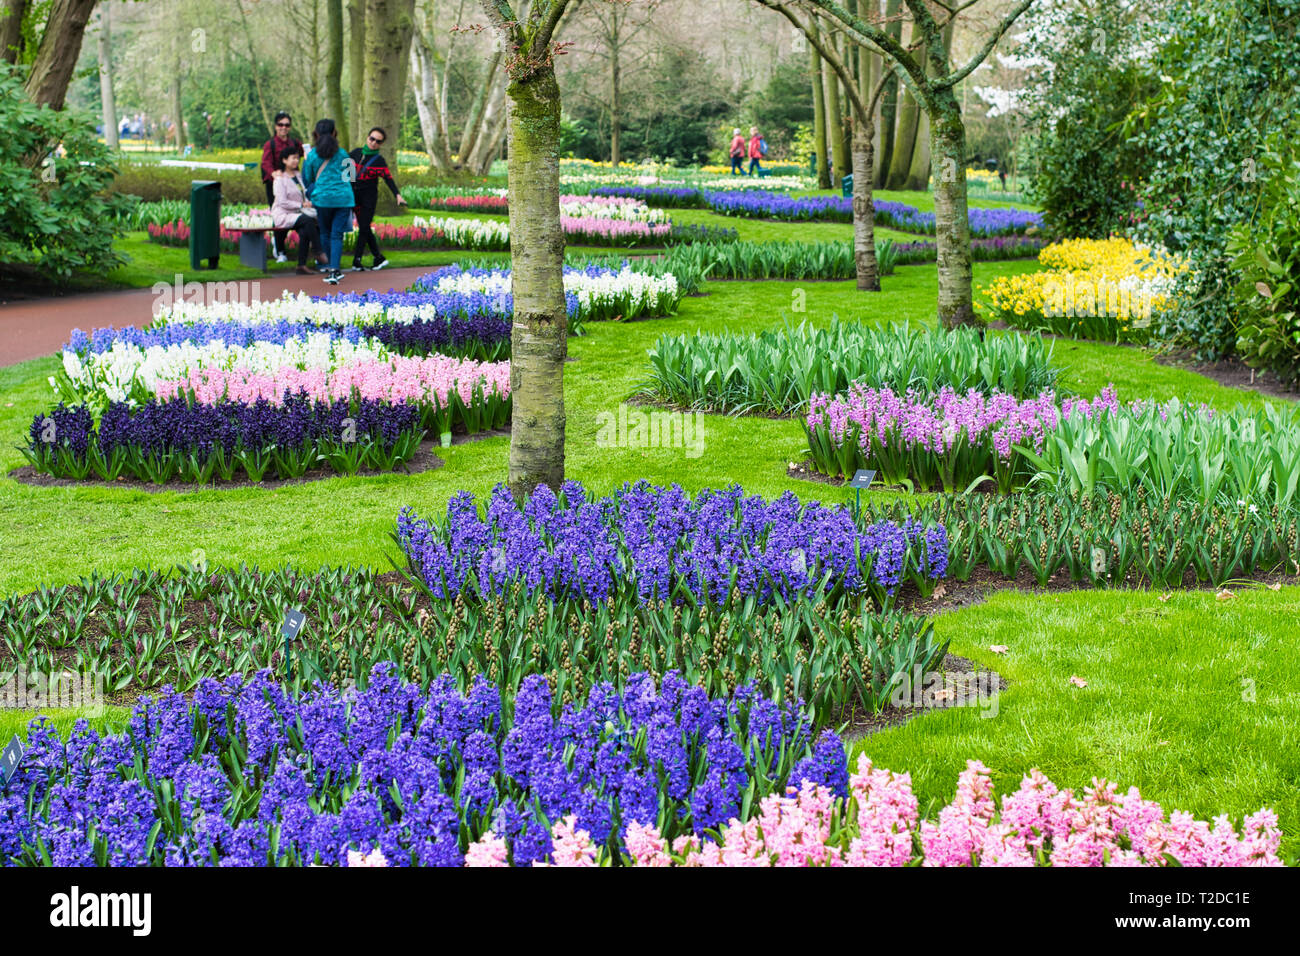 LISSE, NETHERLANDS - APRIL 15, 2018: Flower Festival at Keukenhof Park Stock Photo